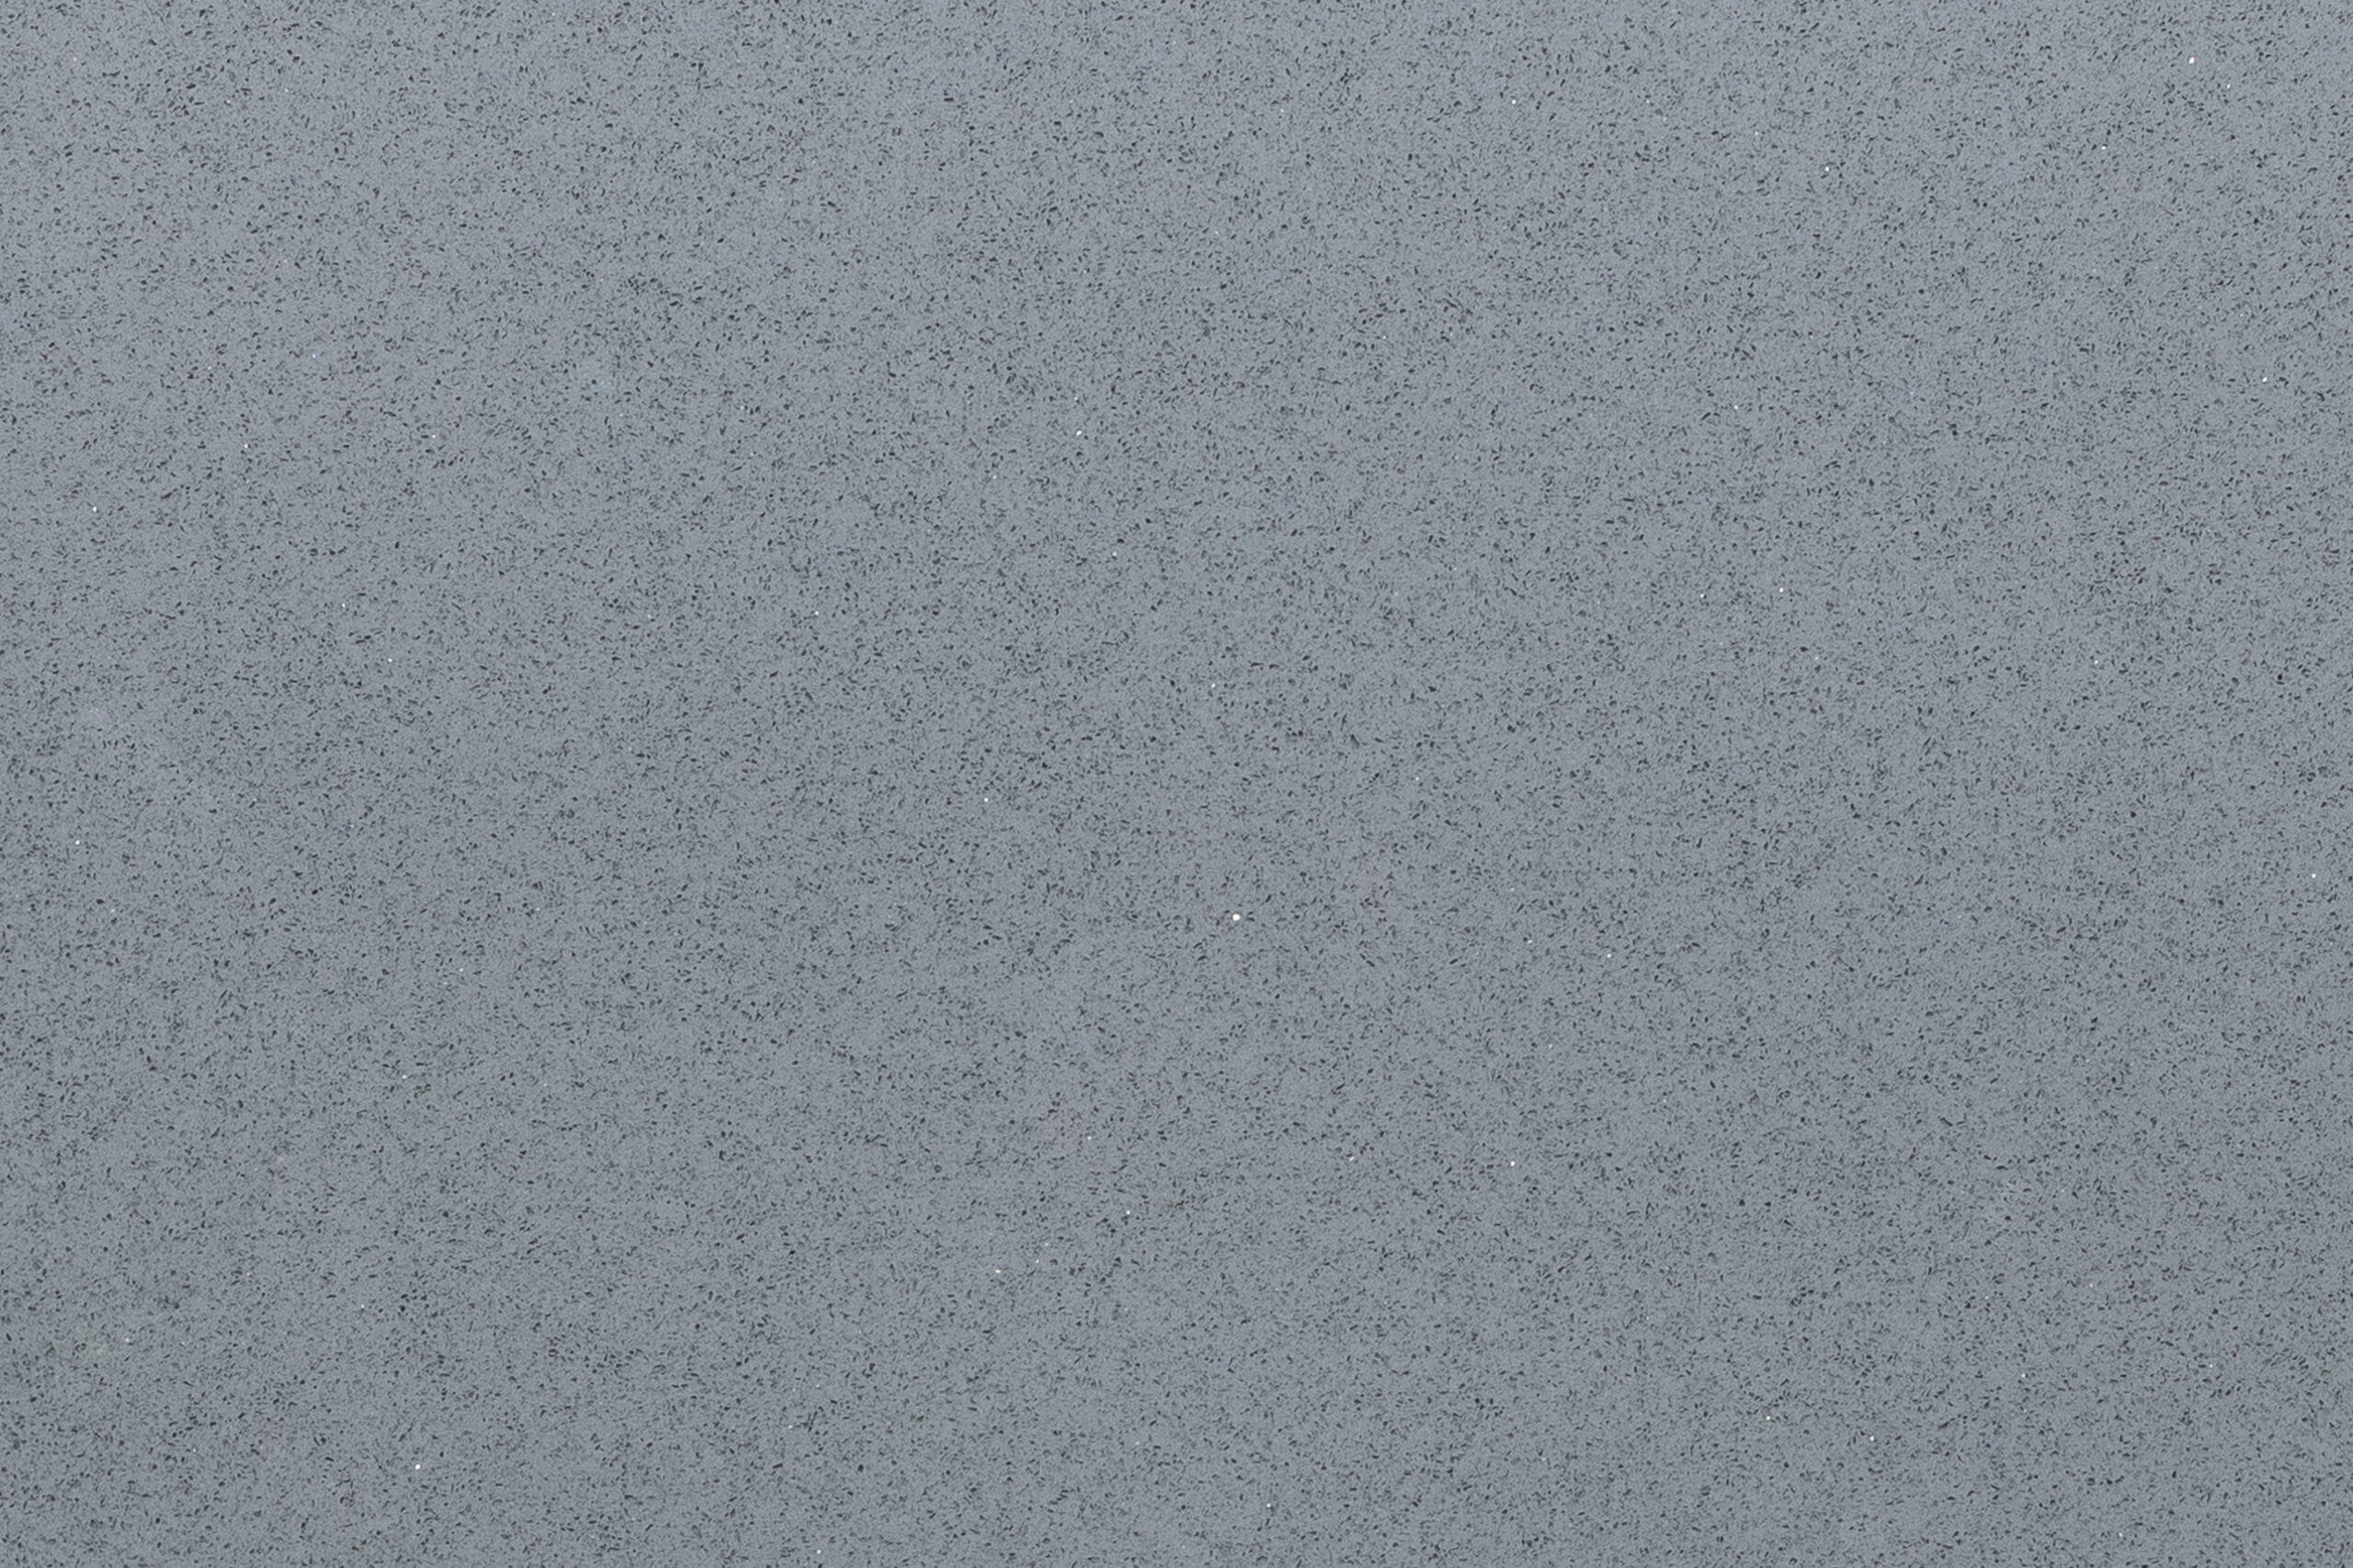 Sparkly Grey Worktop - Brillo Gris